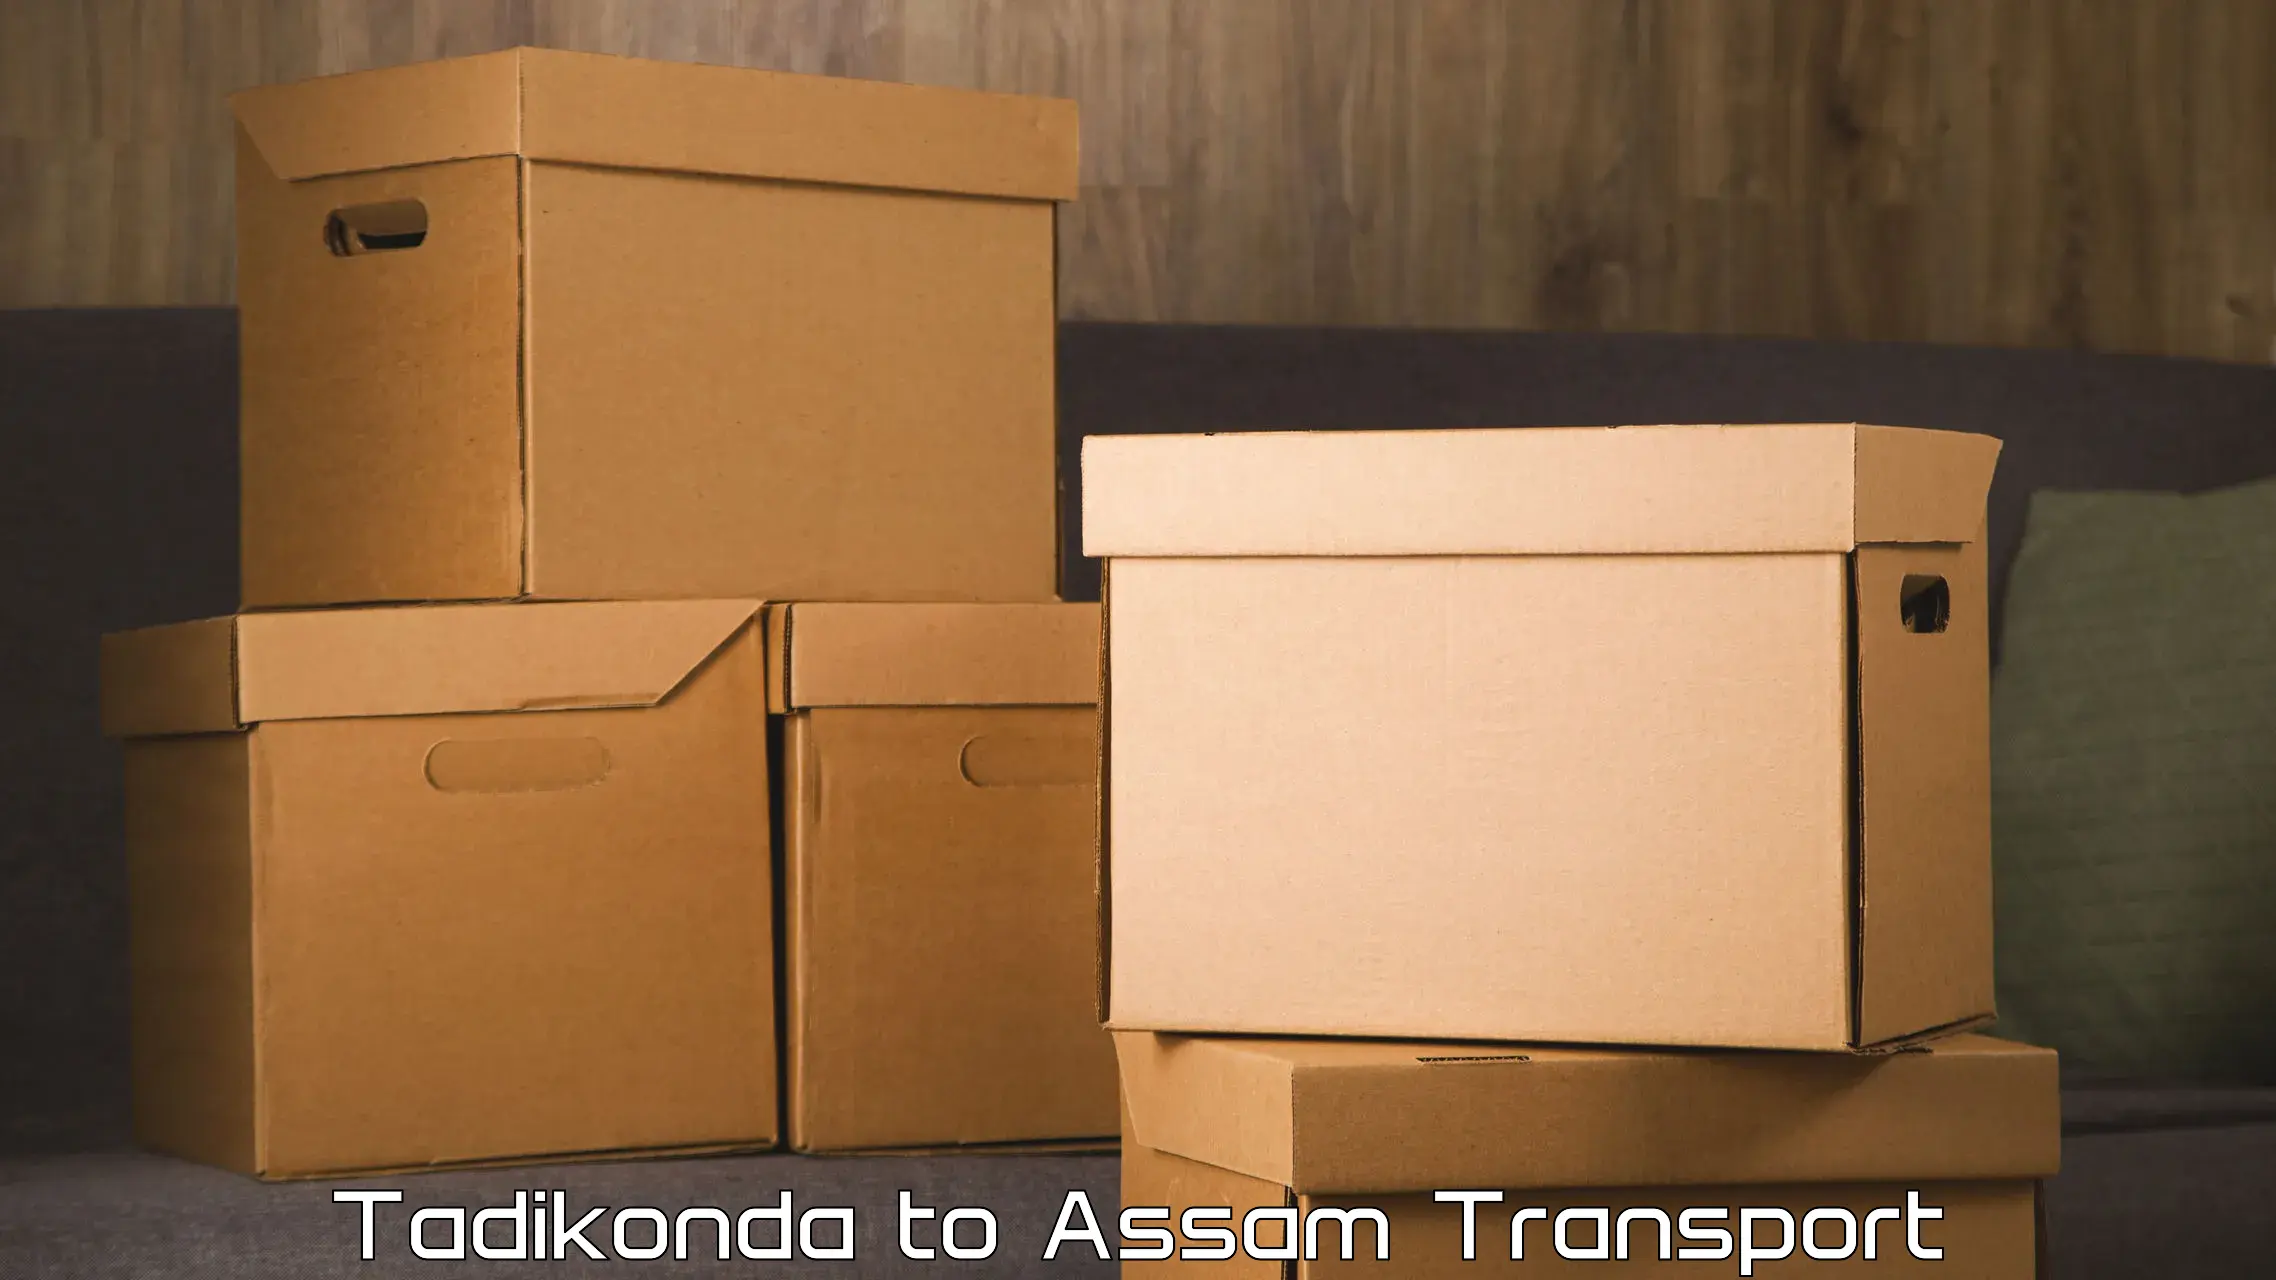 Nearest transport service Tadikonda to Lala Assam